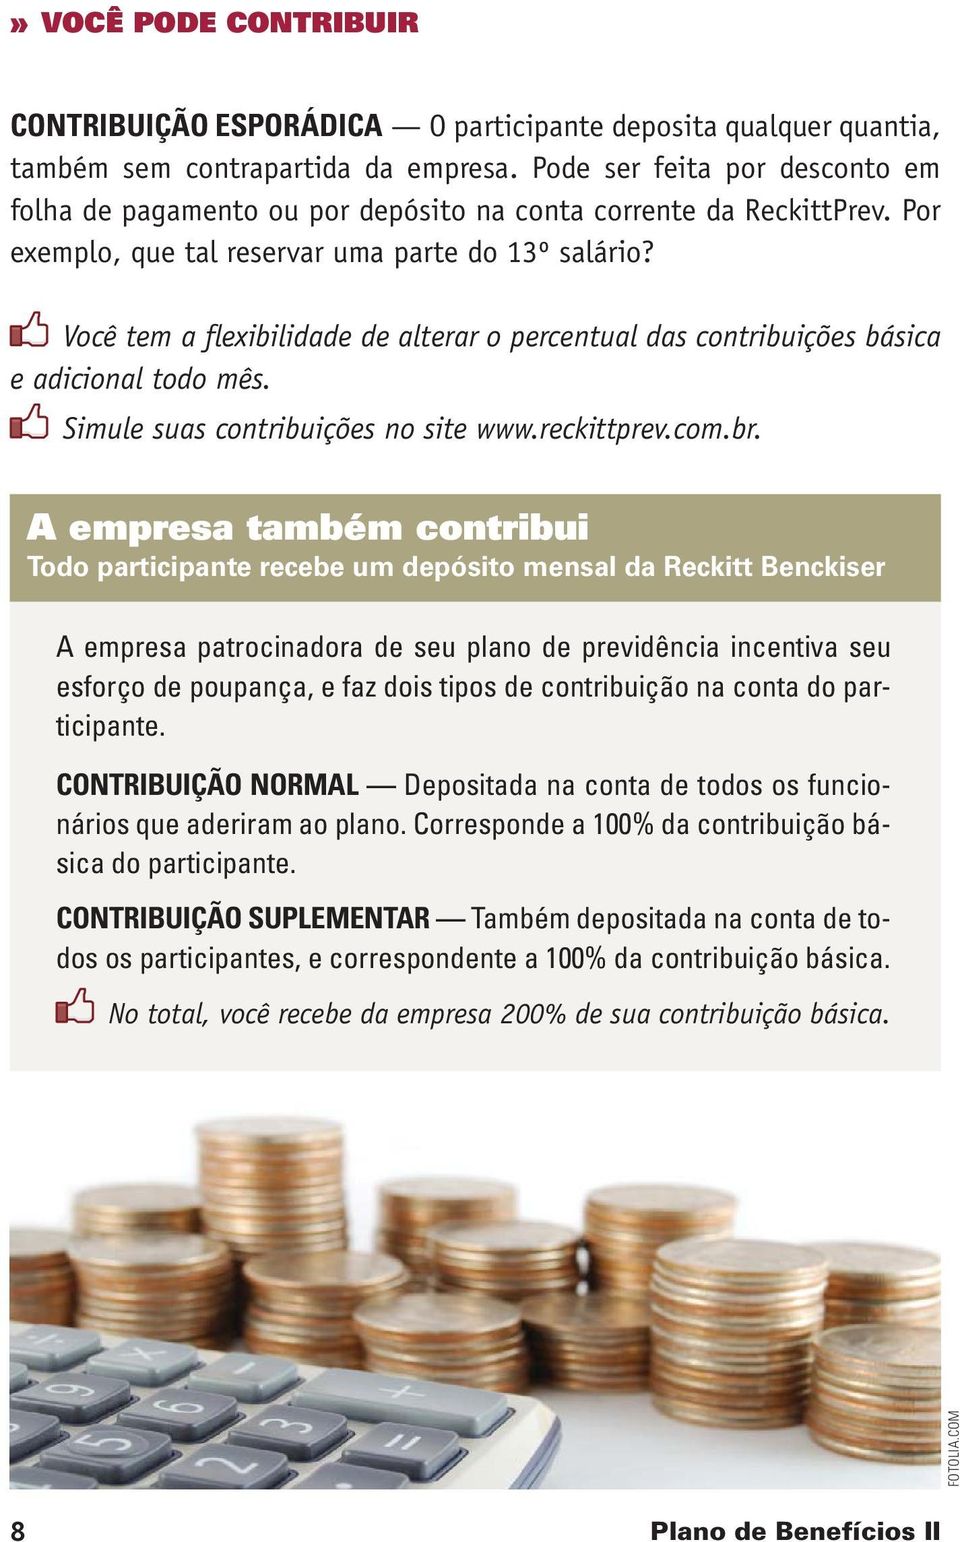 Você tem a flexibilidade de alterar o percentual das contribuições básica e adicional todo mês. Simule suas contribuições no site www.reckittprev.com.br.